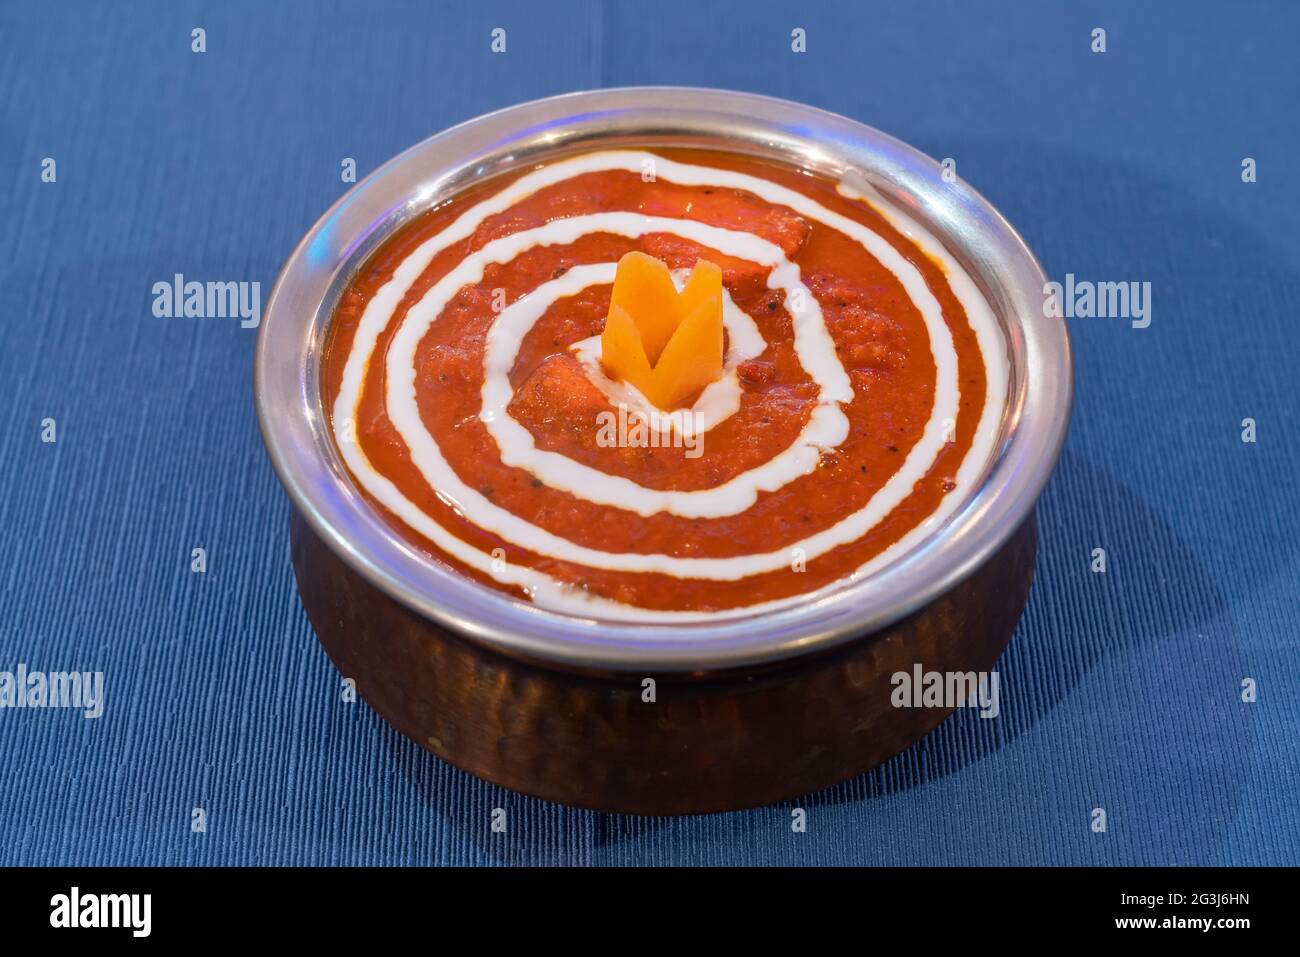 Indische Chiken Tikka Masala-Suppe. Aromatische Cremetomate auf einem Metallteller auf blauem Hintergrund. Stockfoto